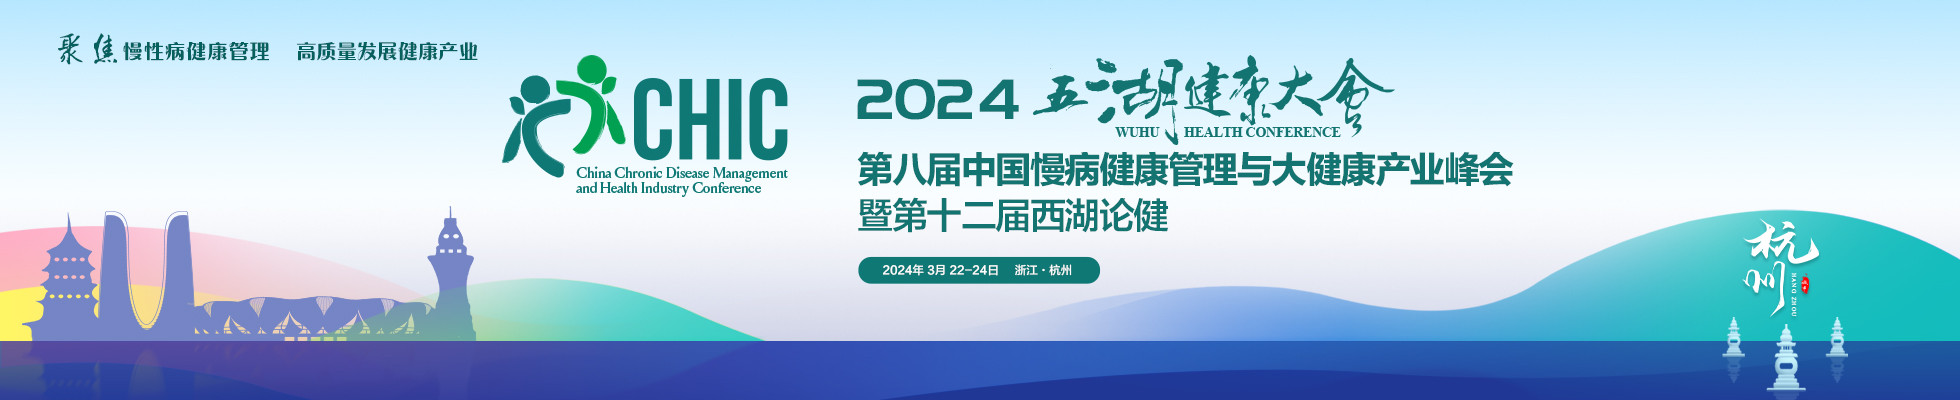 2024五湖健康大会 第八届中国慢病健康管理与大健康产业峰会暨第十二届西湖论健